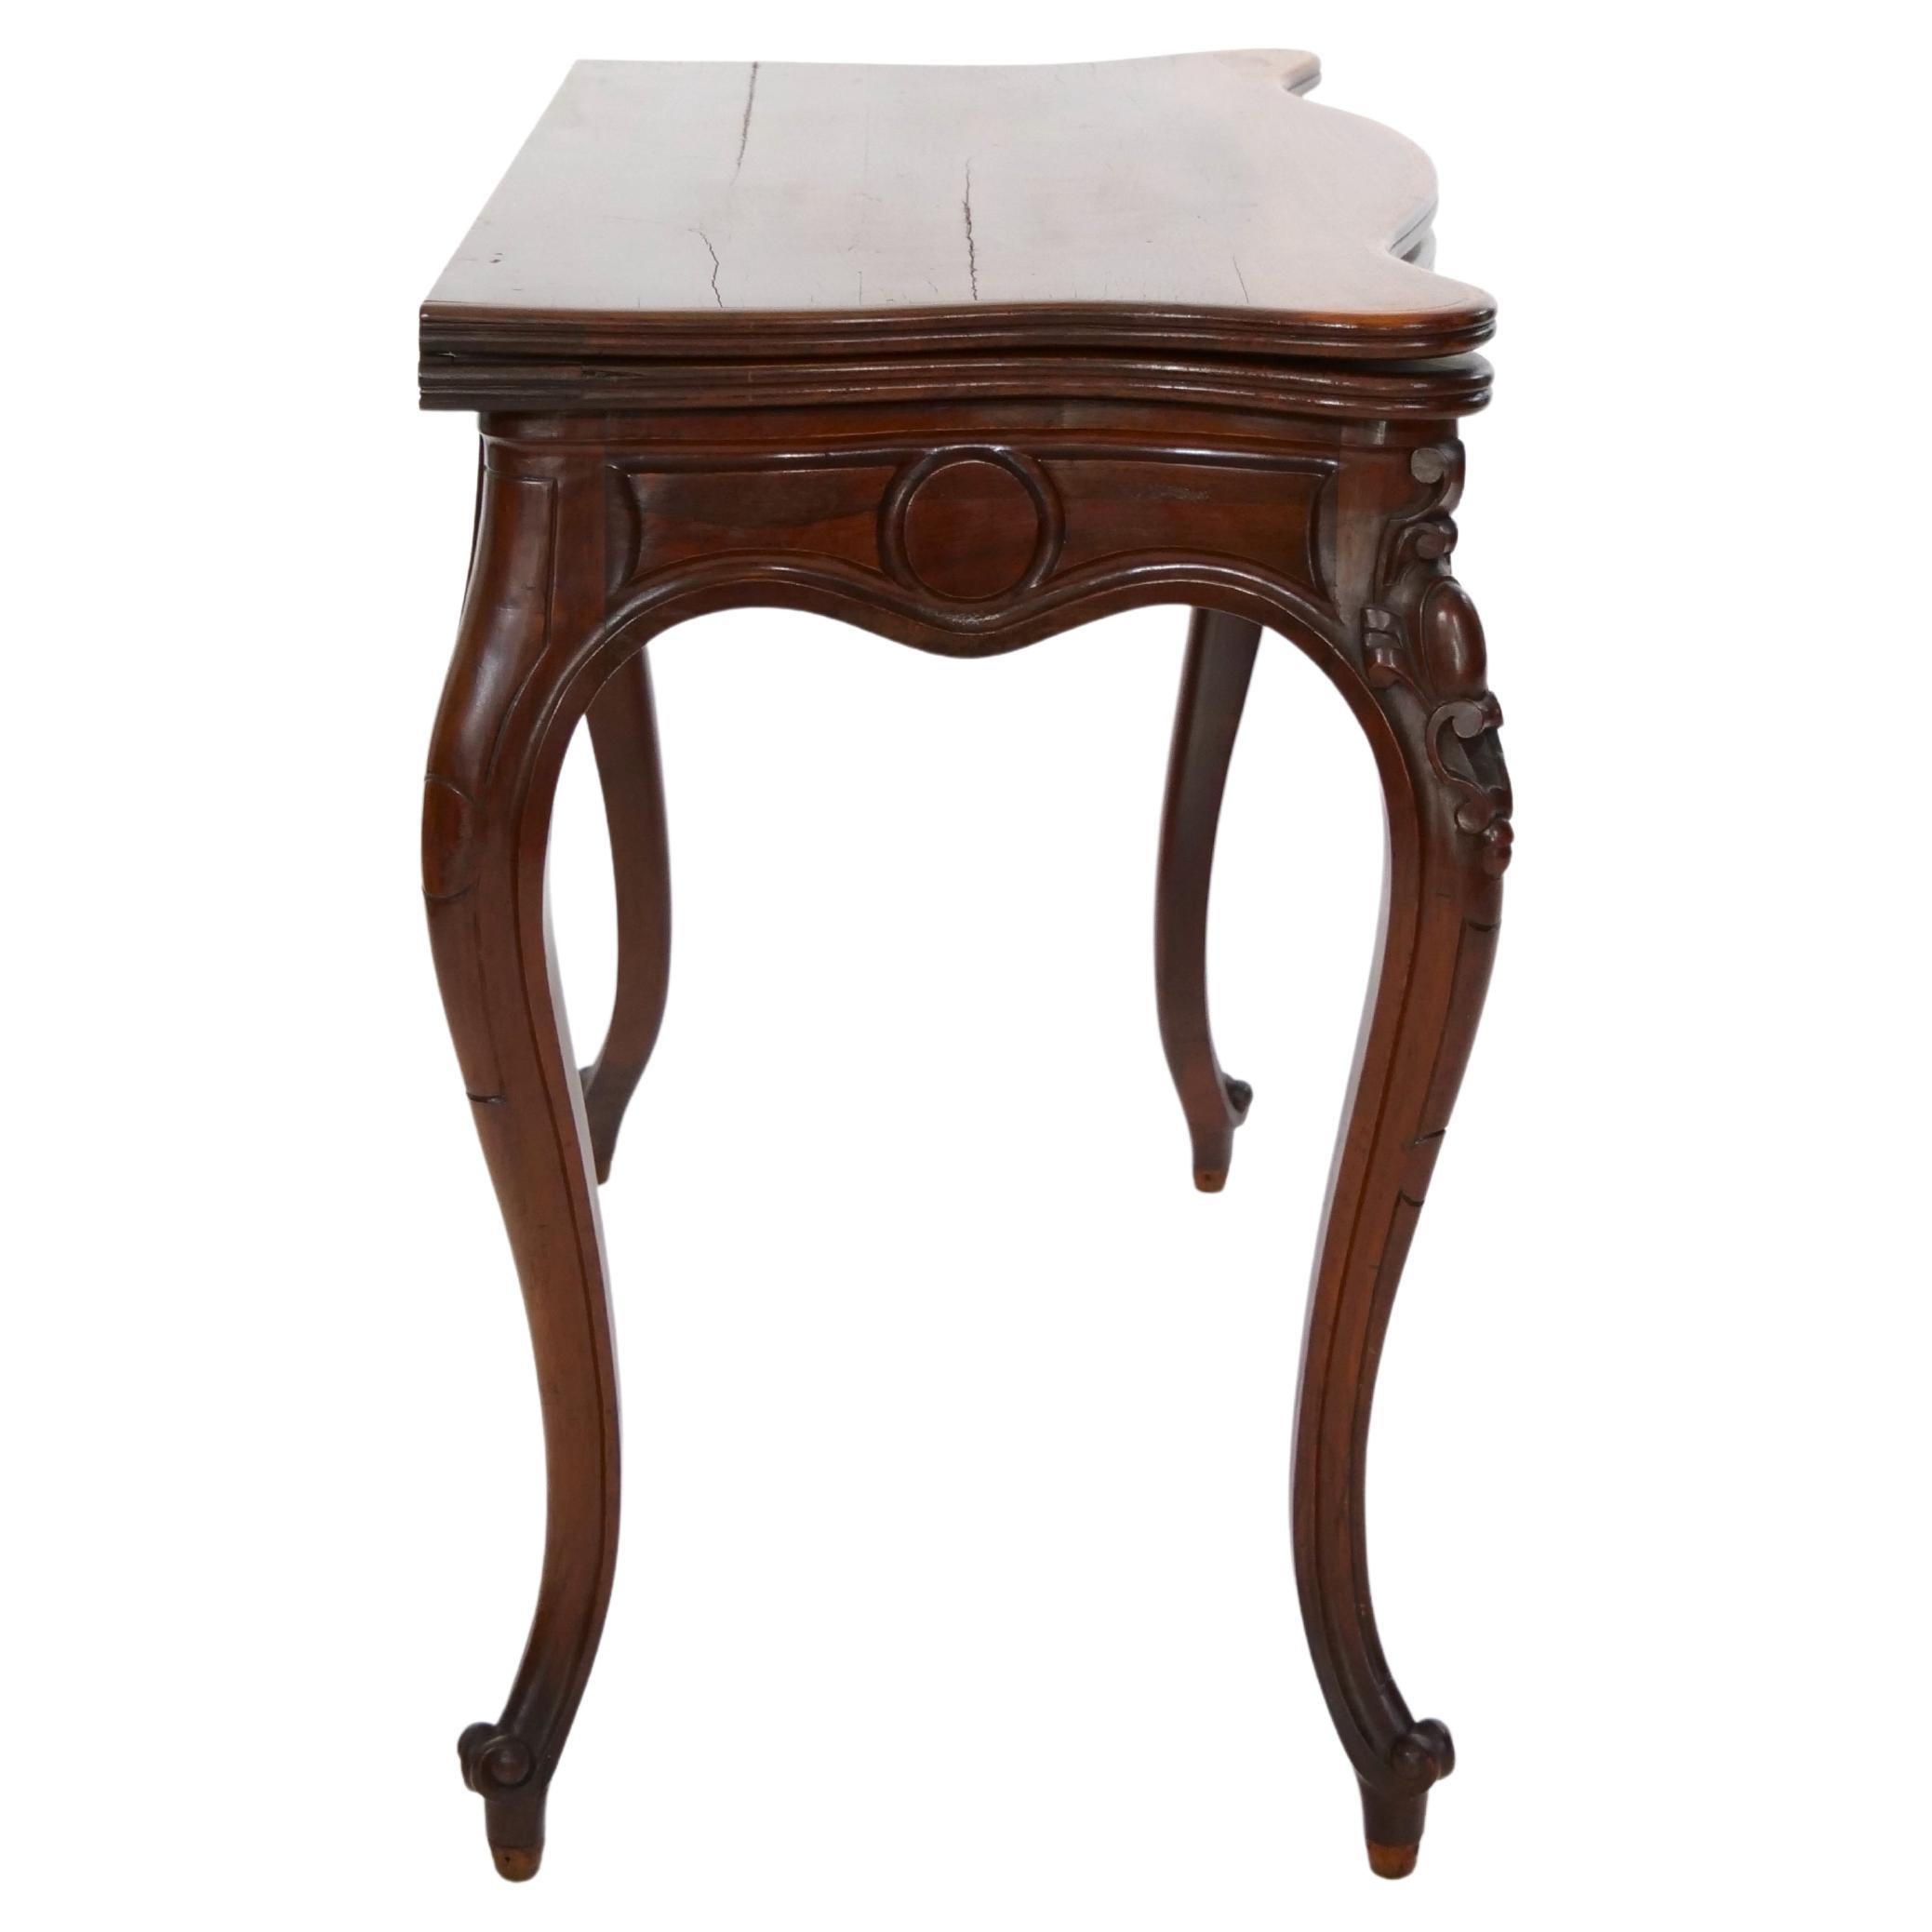 Frühe 19. Jahrhundert Mahagoniholz schön proportioniert Konsole oder Spieltisch mit einem Flip-Top-Leder Details, wenn sie auf einem leicht geschwungenen Cabriole Beine ruht geöffnet. Der Tisch ist in einem guten antiken Zustand.  Angemessene